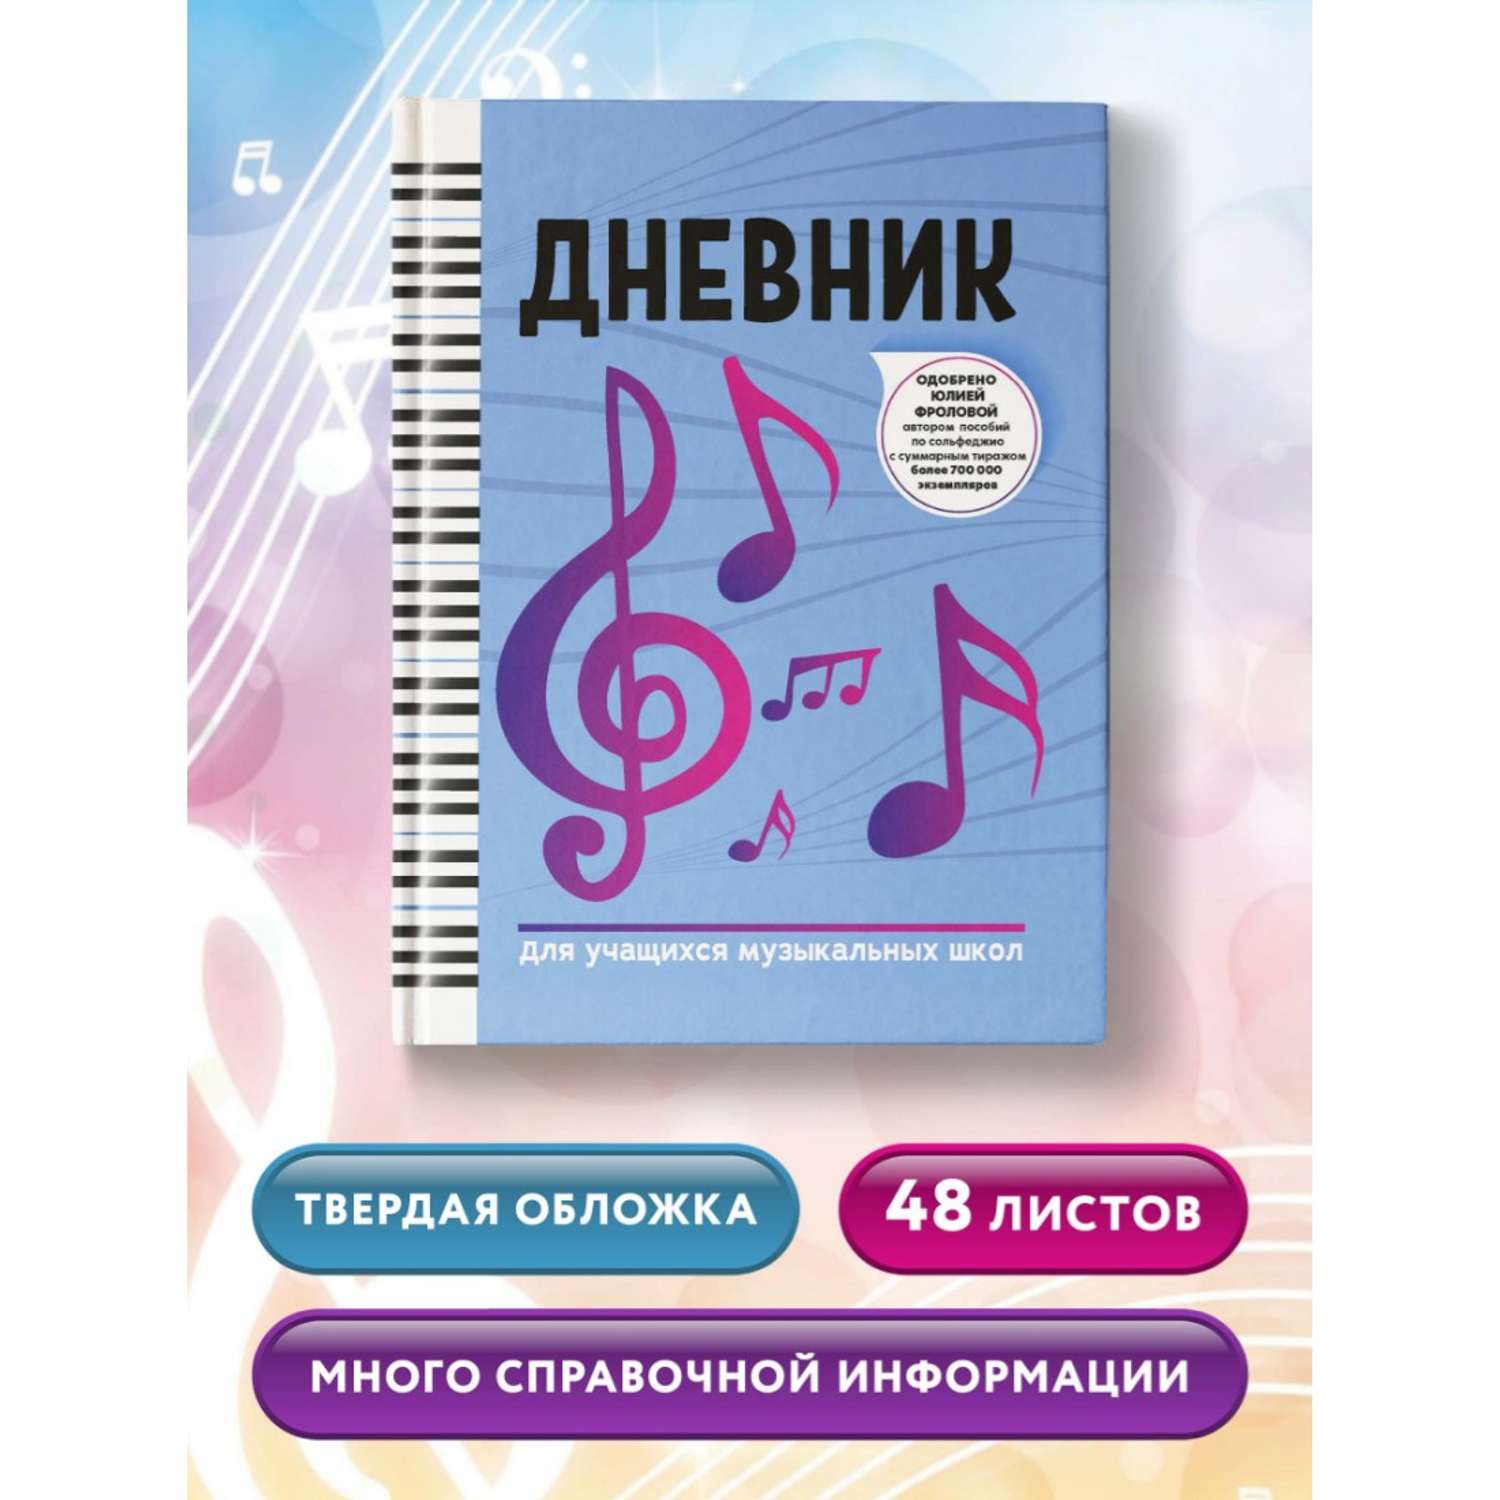 Книга Феникс Дневник для учащихся музыкальных школ - фото 2